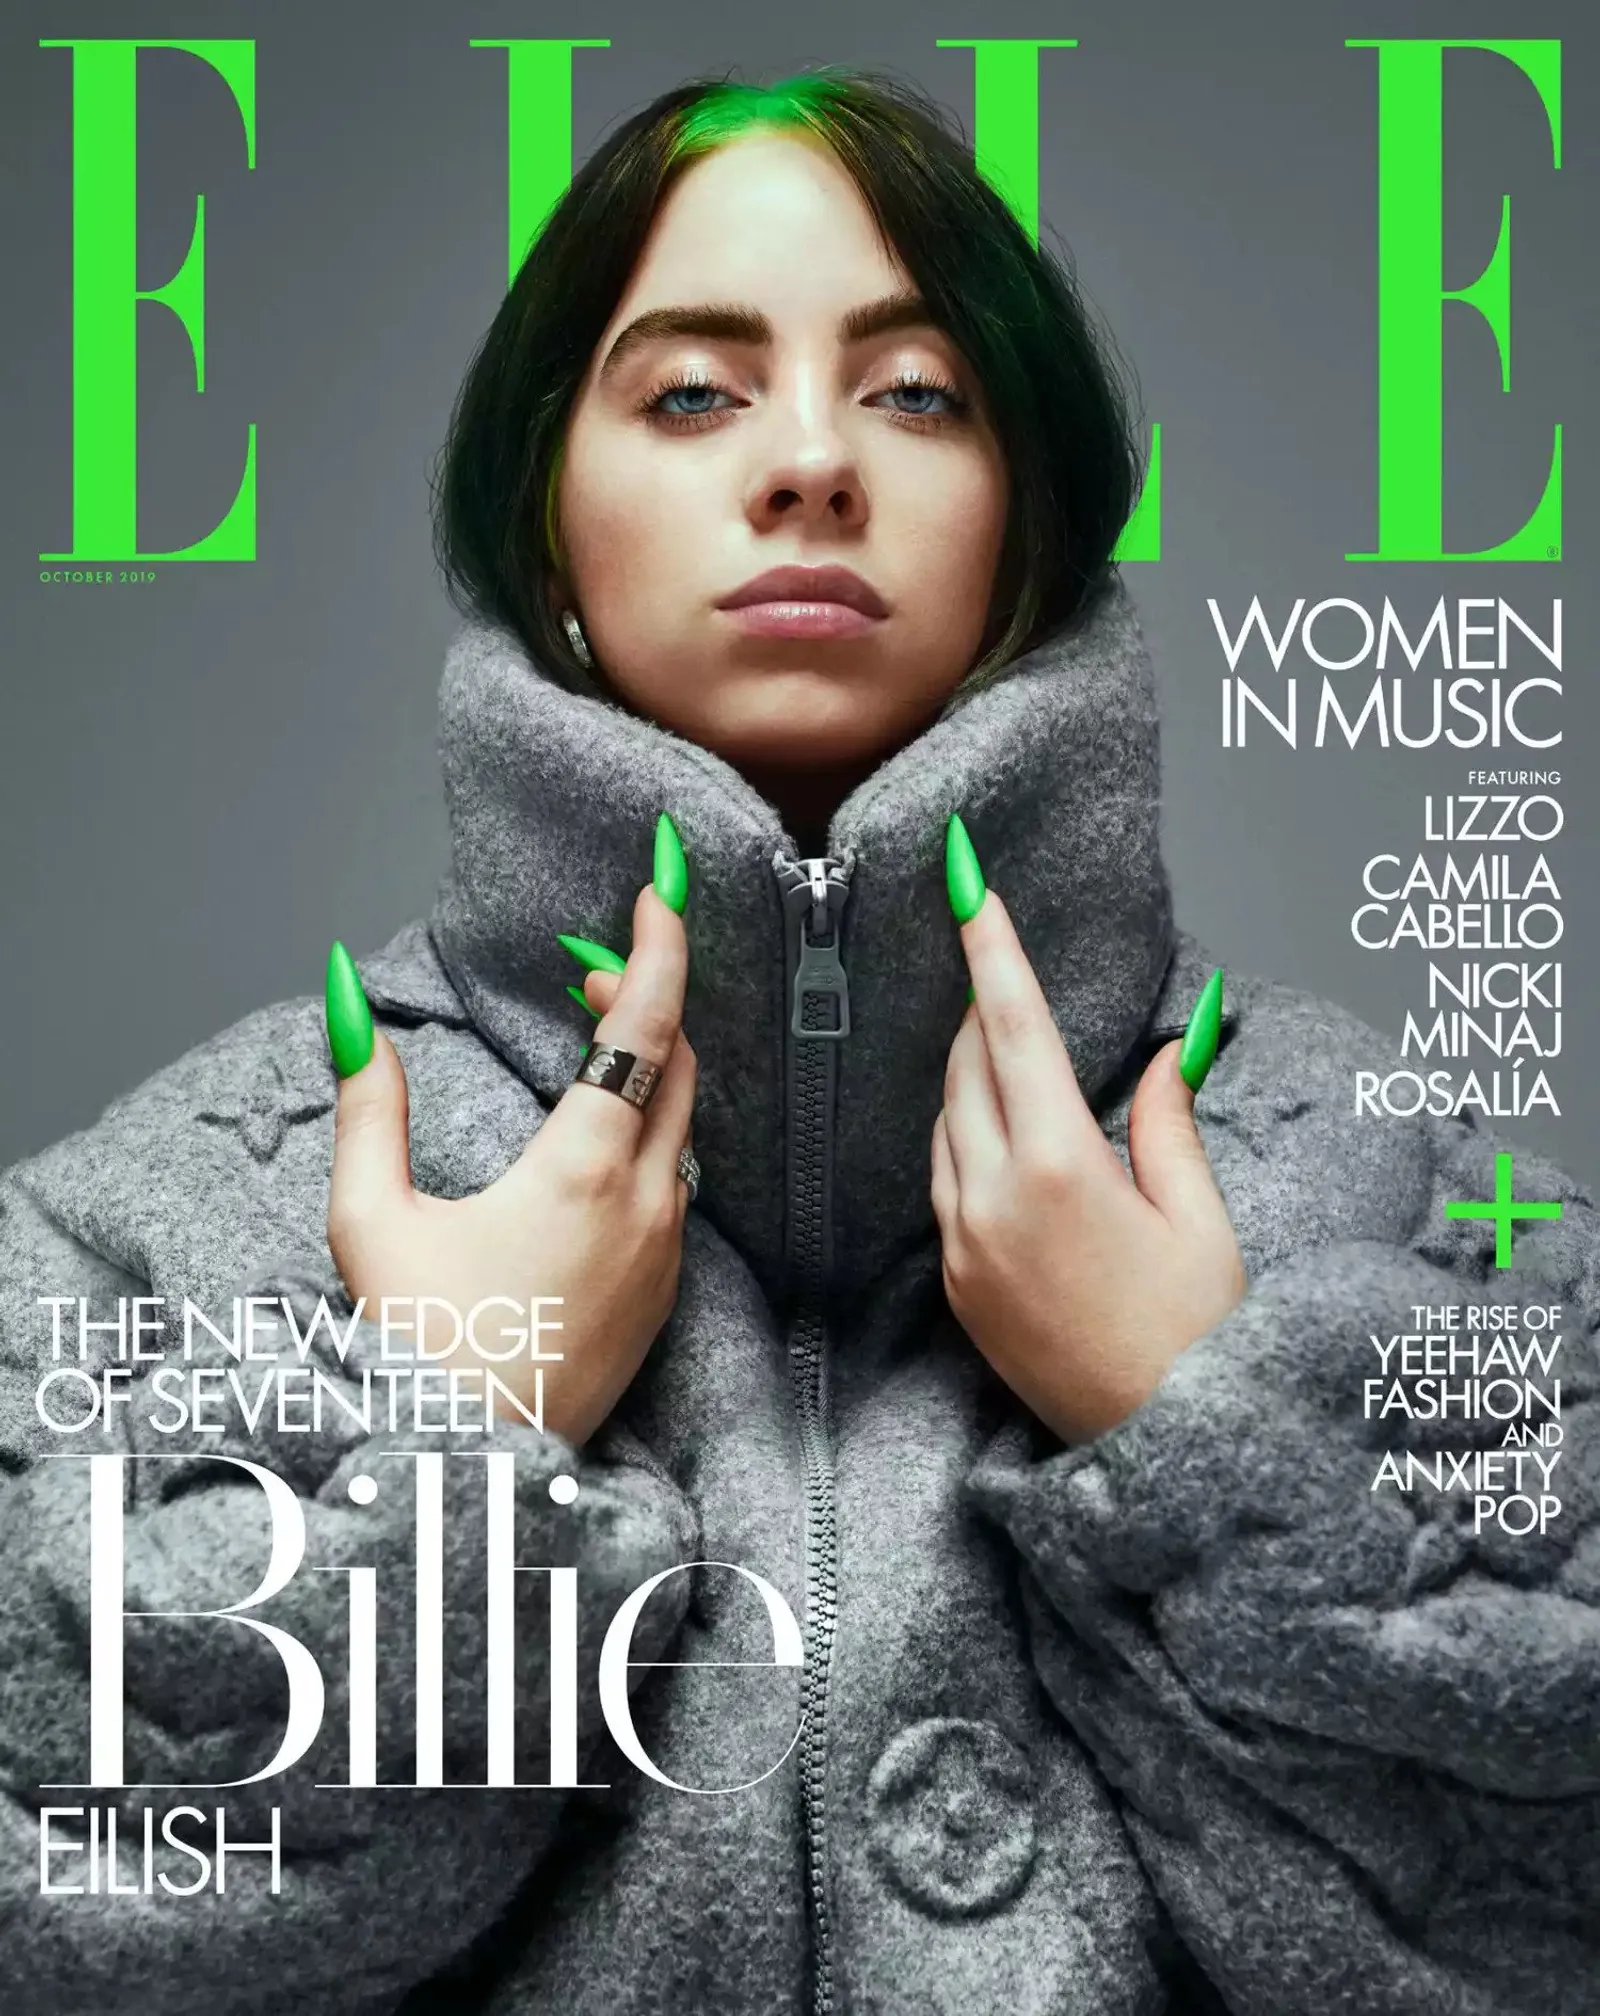 Gaya Terbaik Billie Eilish saat Jadi Model Sampul Majalah Terkenal